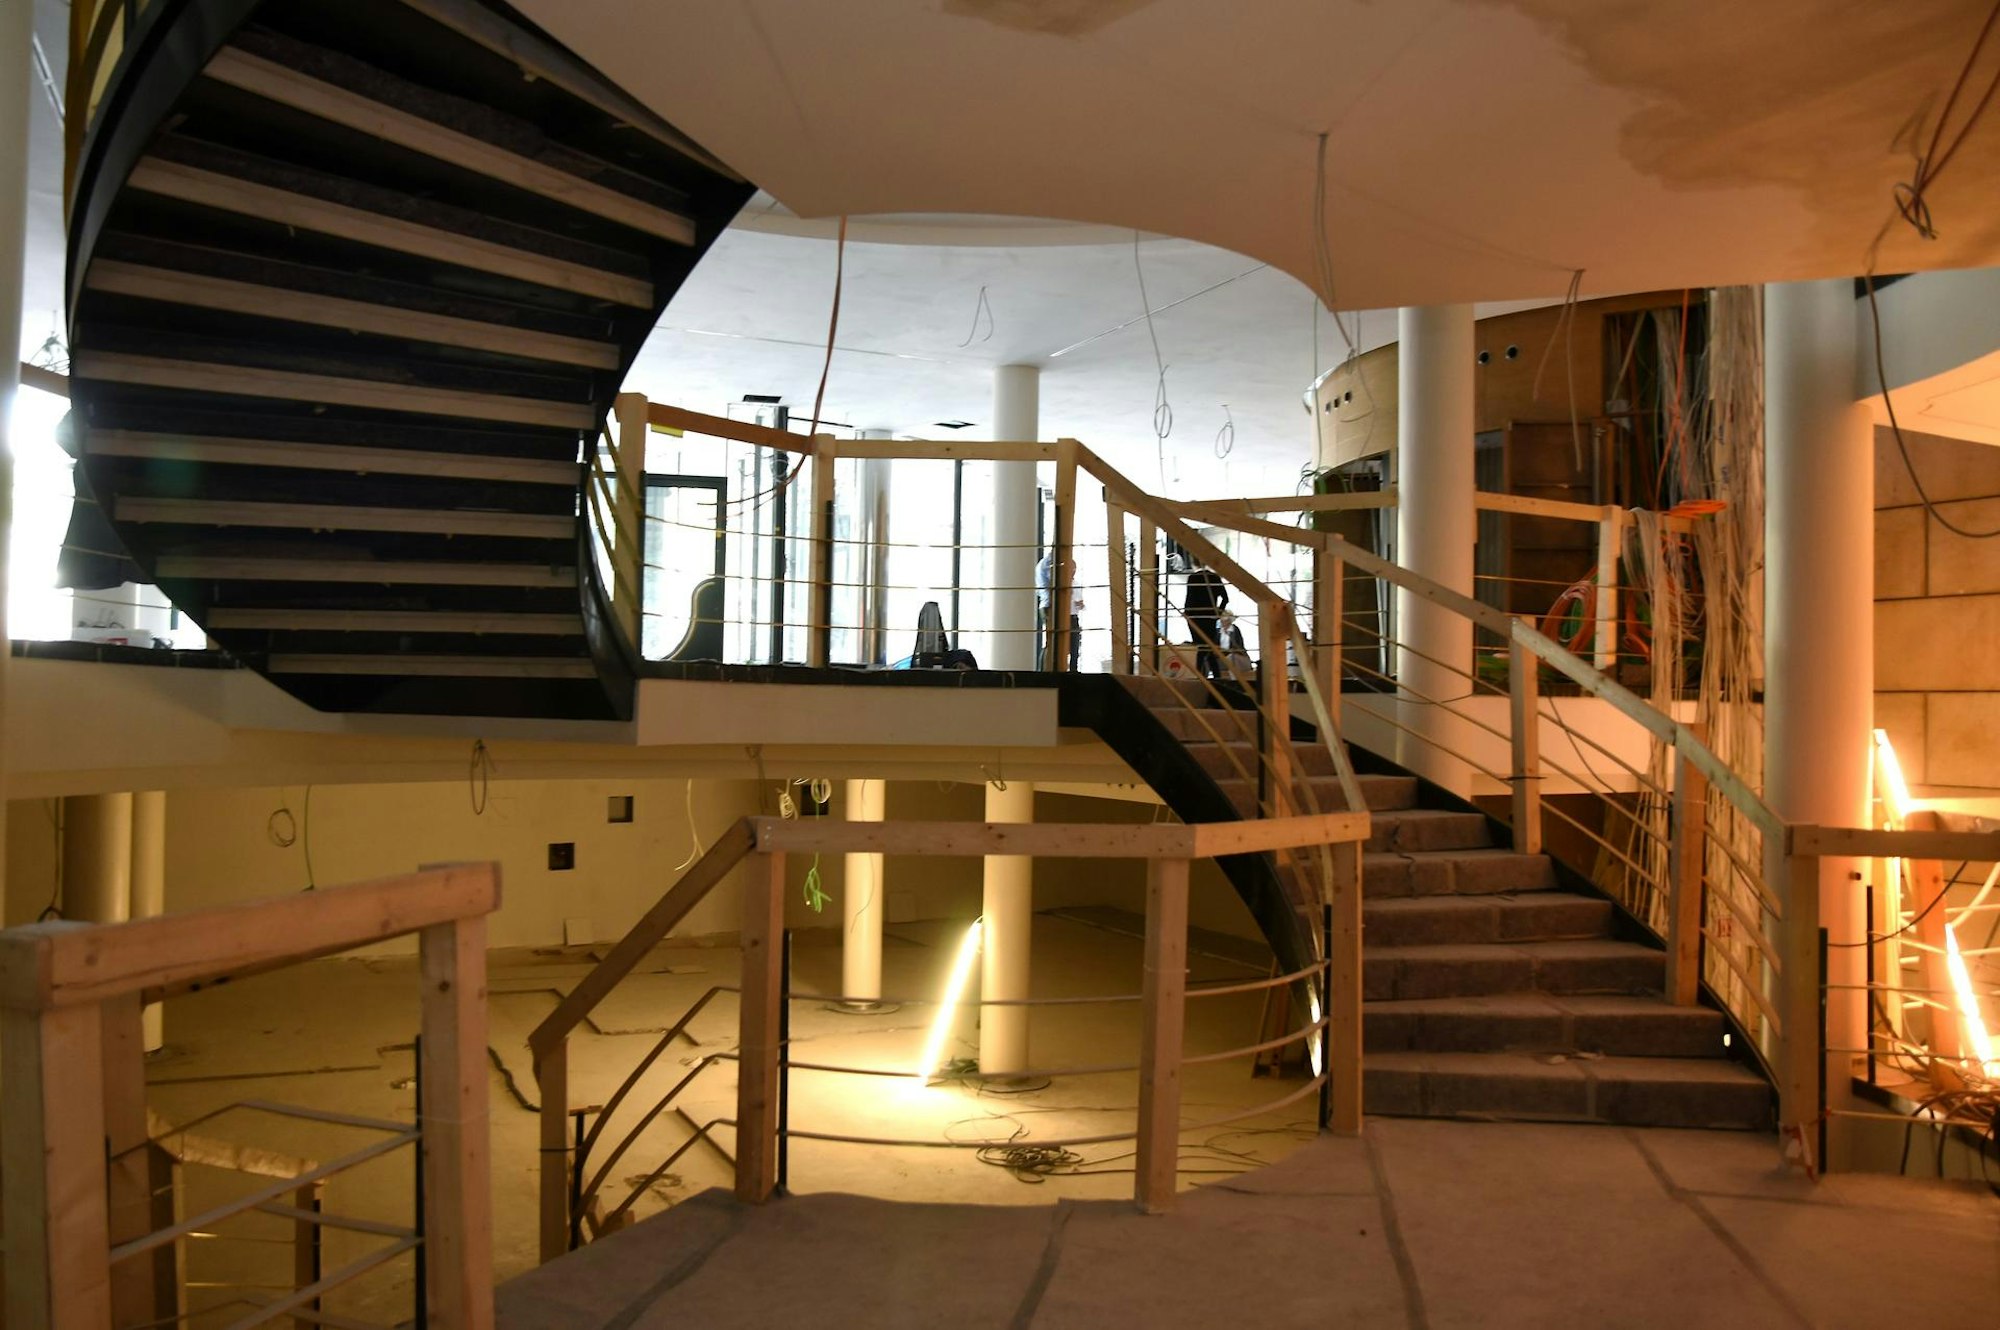 Blick in die Innenräume – hier soll im kommenden Jahr das Übergangsdomizil des Stadtmuseums öffnen.